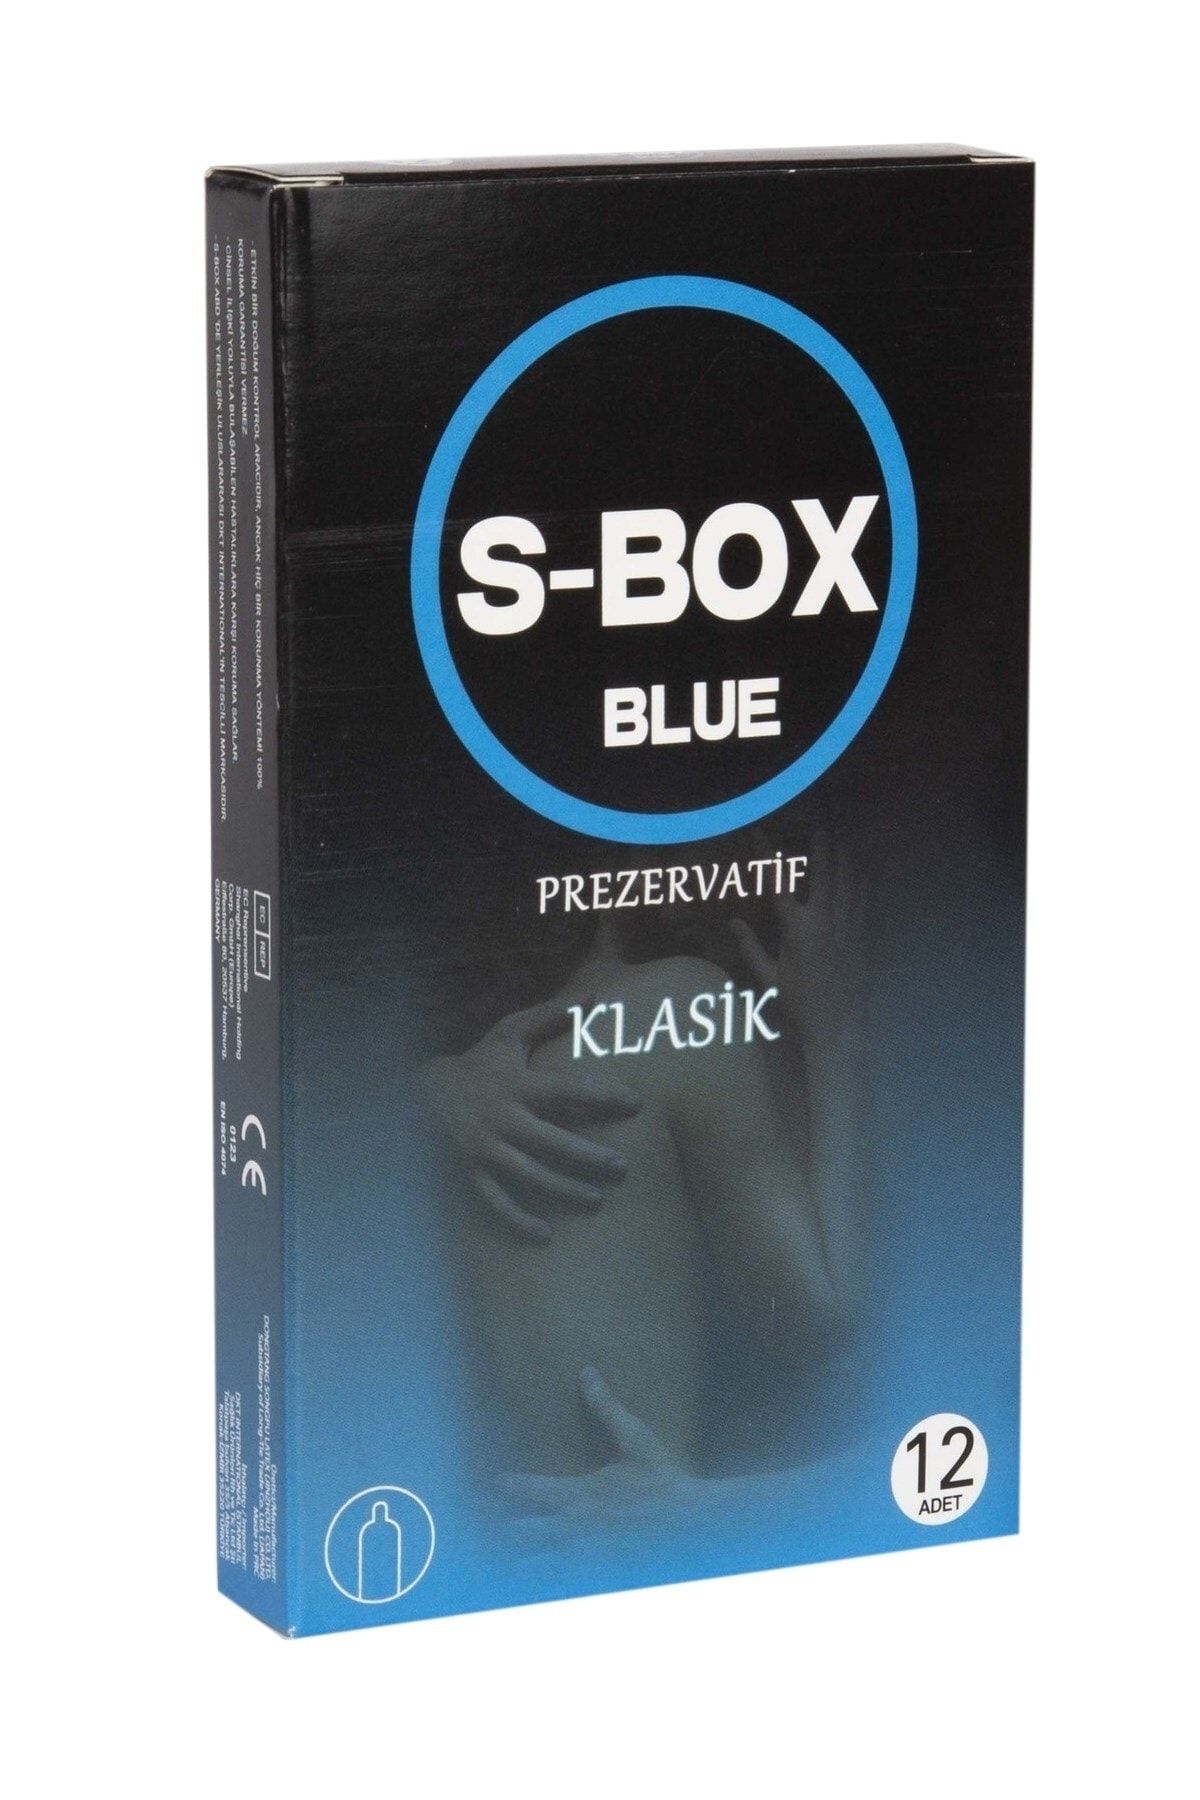 S-Box Klasik Uzun Geceler Için 12'li Prezervatif